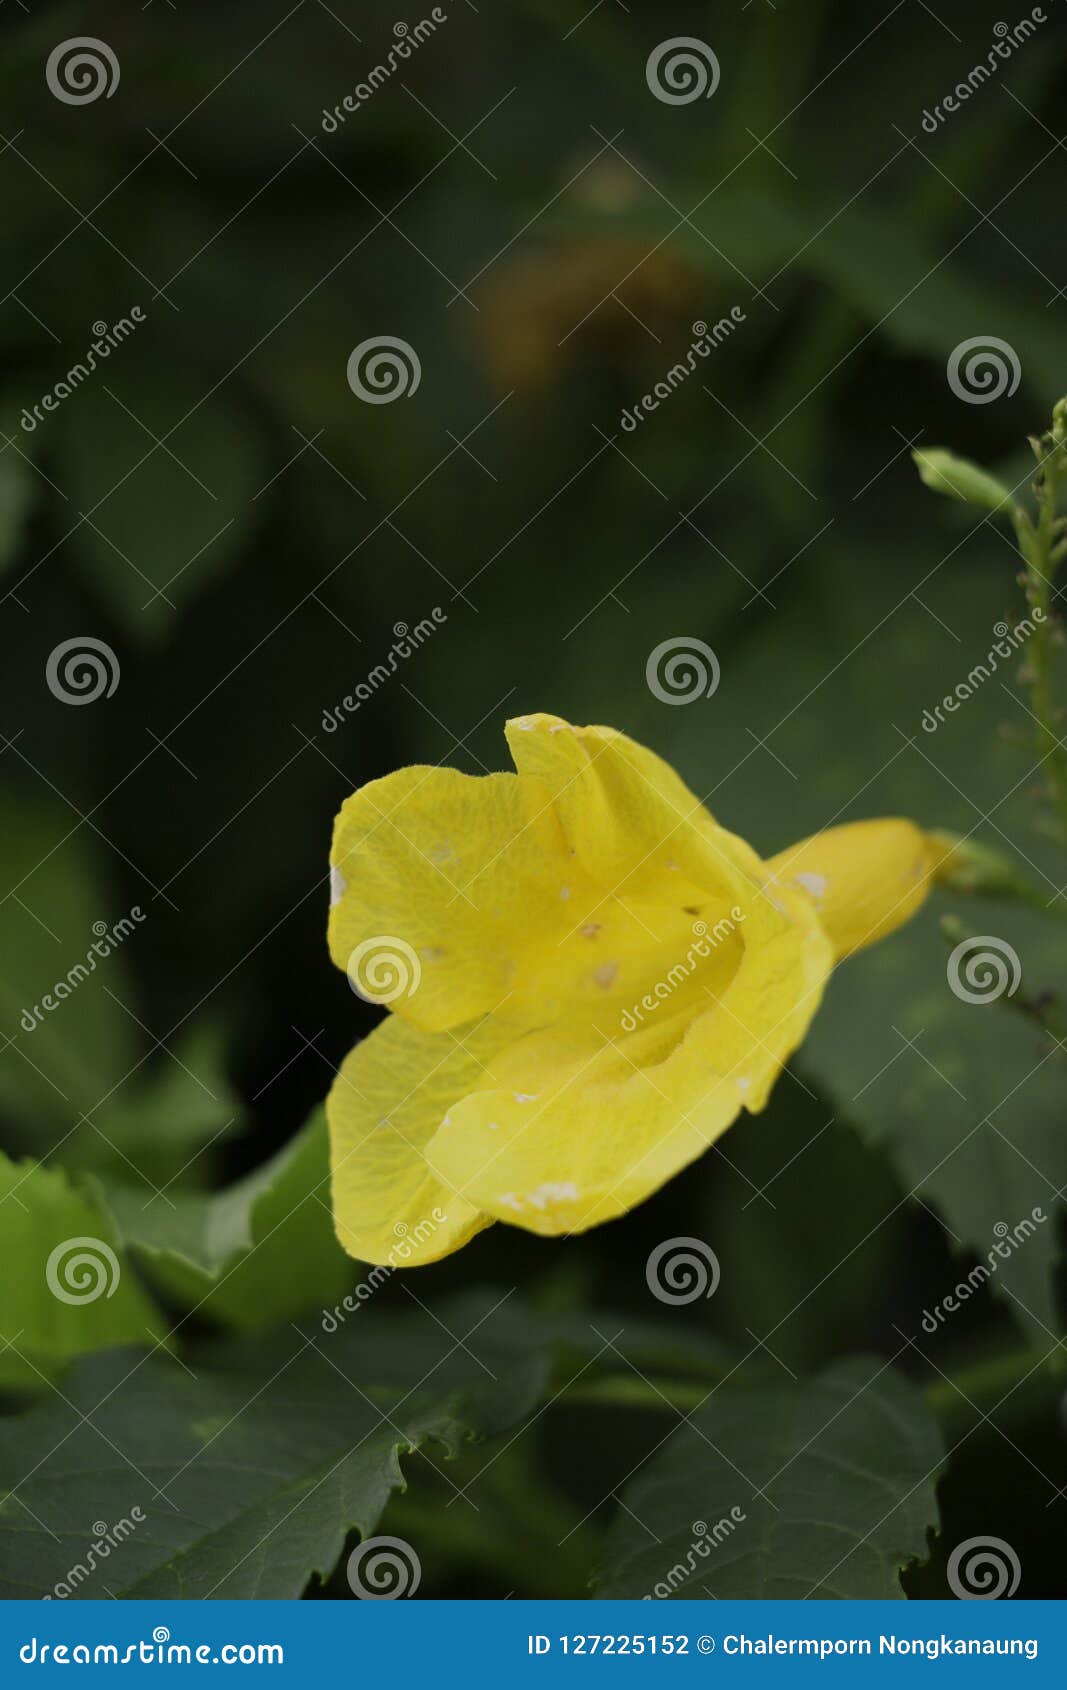 Hình ảnh hoa Yellow Caesalpinia sẽ khiến bạn say đắm với vẻ đẹp đầy sắc màu của nó. Đây là một loại hoa rất đặc biệt và đẹp mắt, luôn thu hút sự chú ý của mọi người. Bạn sẽ được chiêm ngưỡng những bông hoa tuyệt đẹp này trong những bức ảnh đẹp nhất. Xem ngay để trải nghiệm niềm đam mê nhiếp ảnh! 